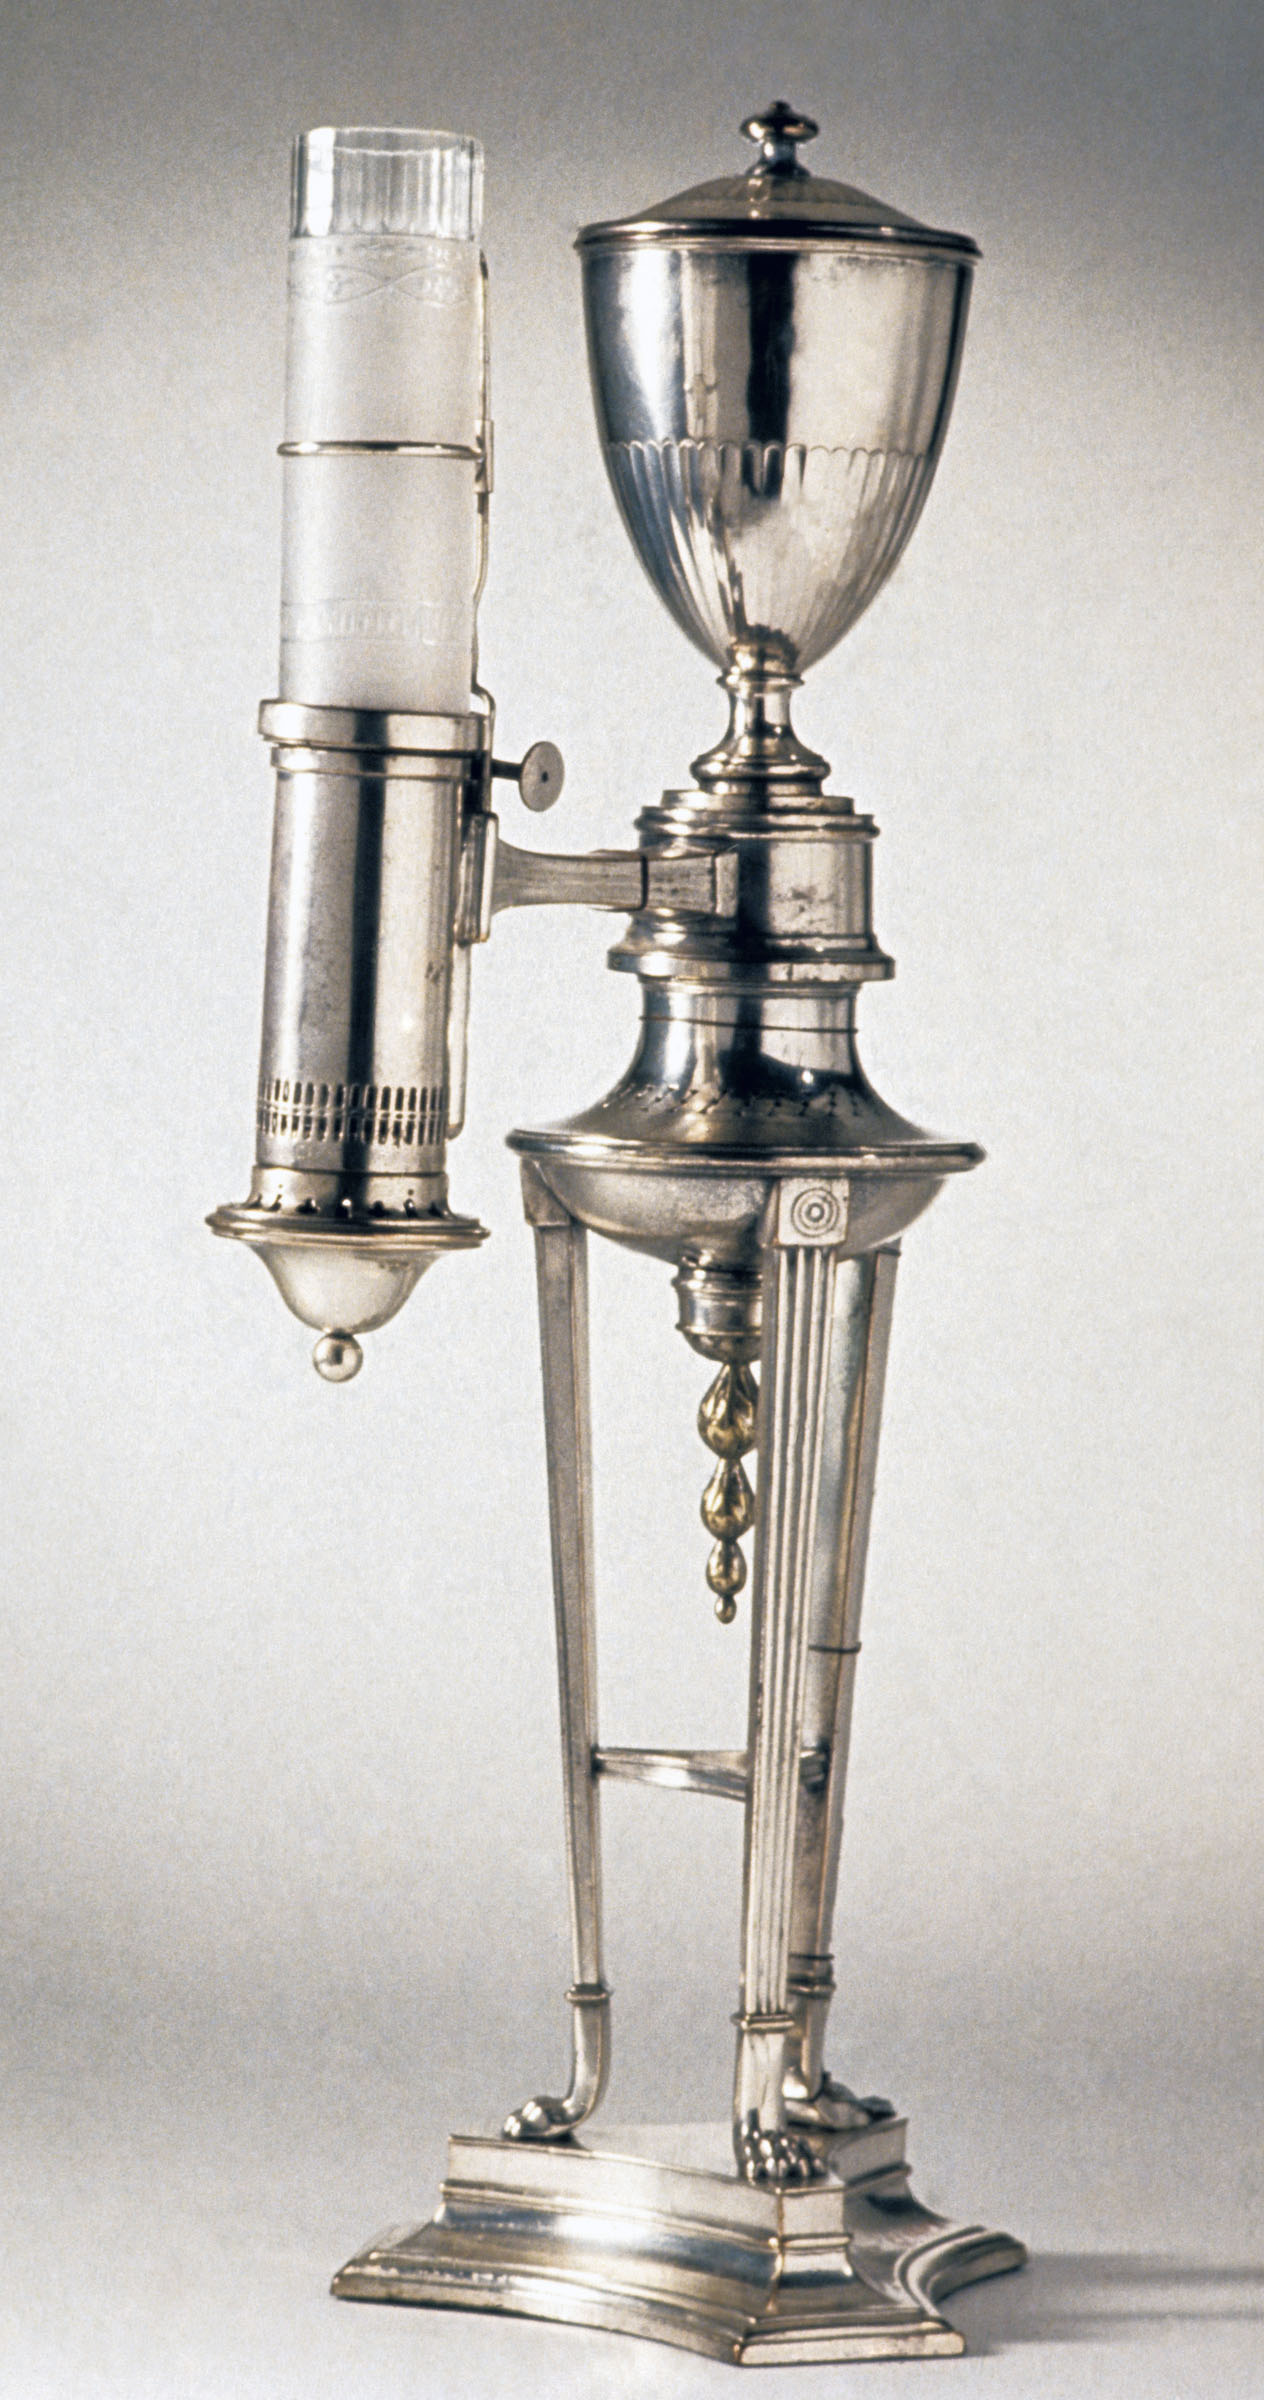 1961.1411.001 Lamp, Argand Lamp, view 1